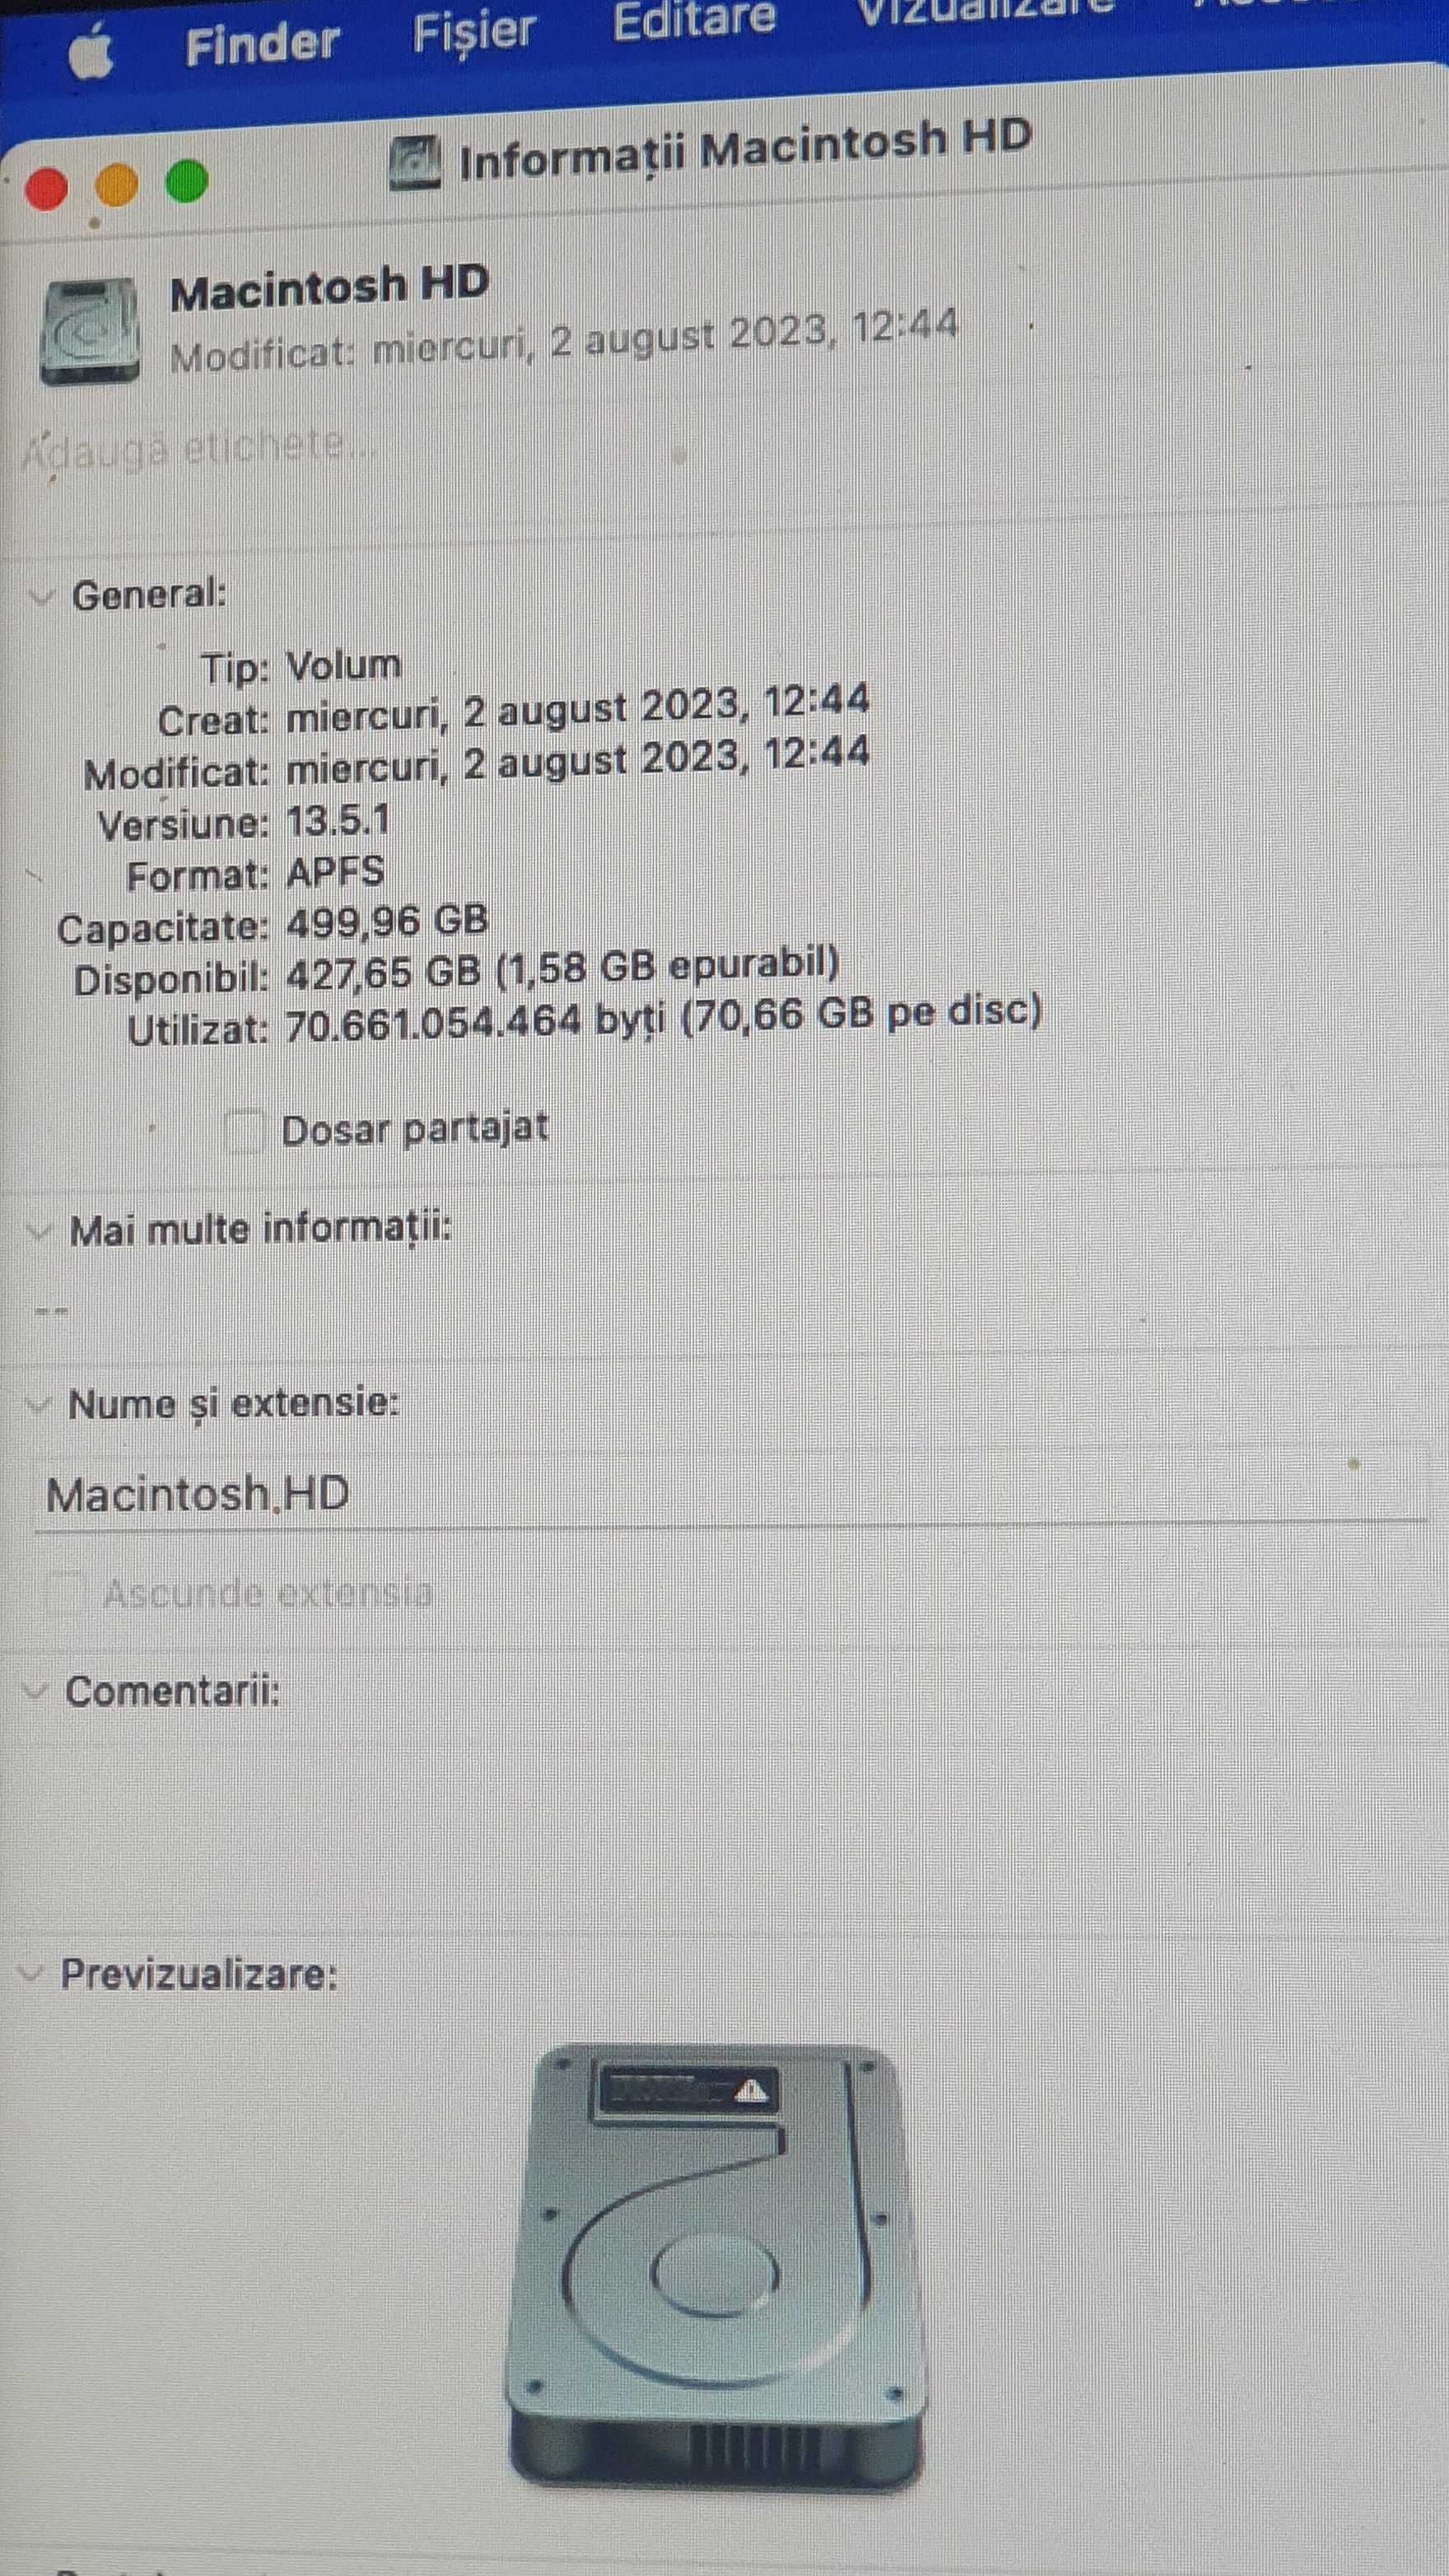 Mac Mini i7 3.2x6nuclee-32gb ram-ssd 500gb